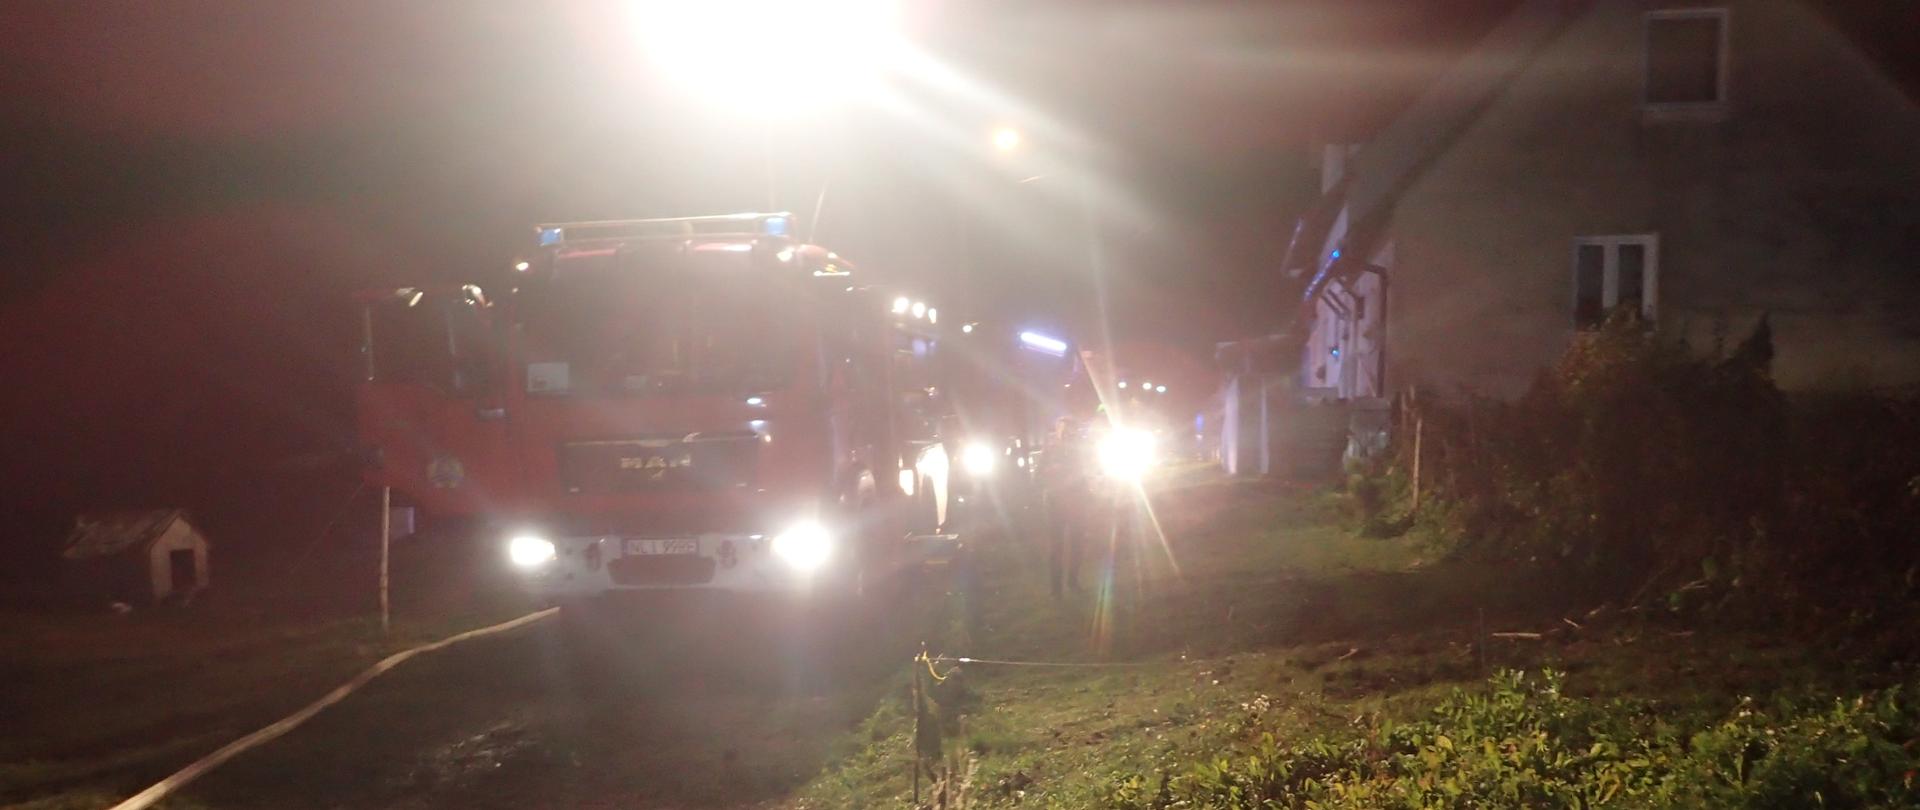 Zdjęcie przedstawia ustawione pojazdy pożarnicze równolegle do zagrożonego budynku. Pora nocna